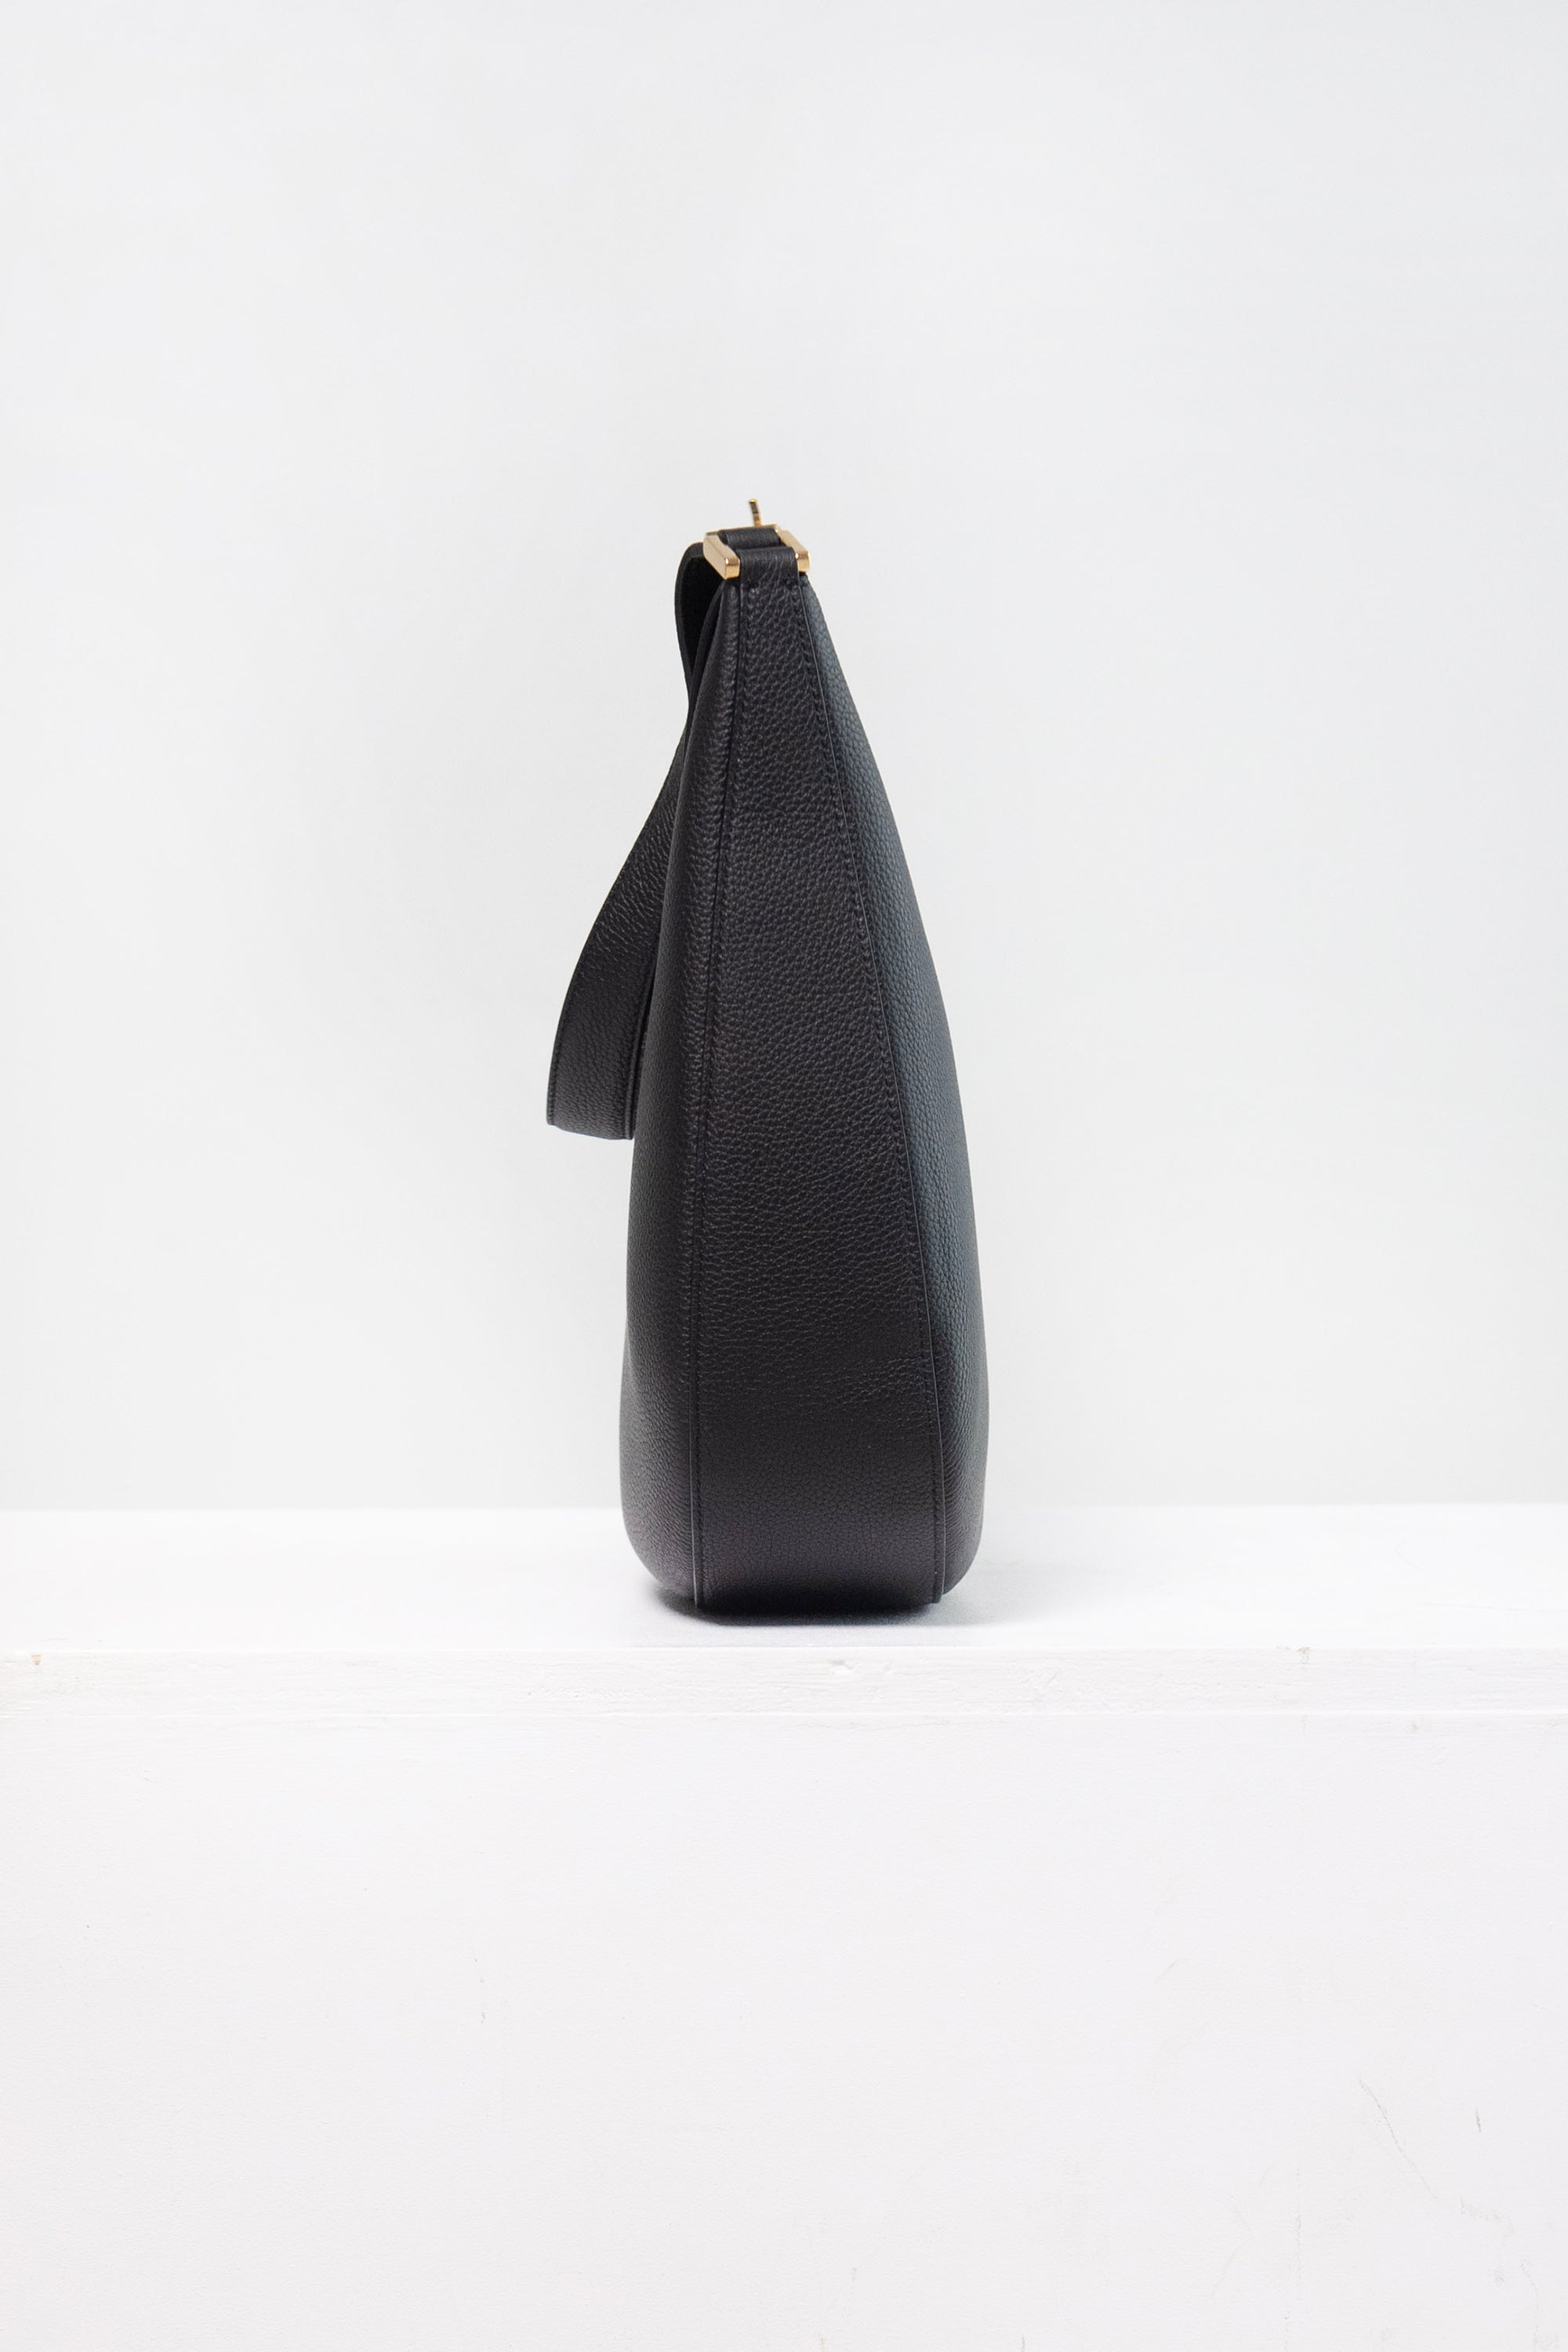 Small Tondo Hobo in Black Leather – Savette